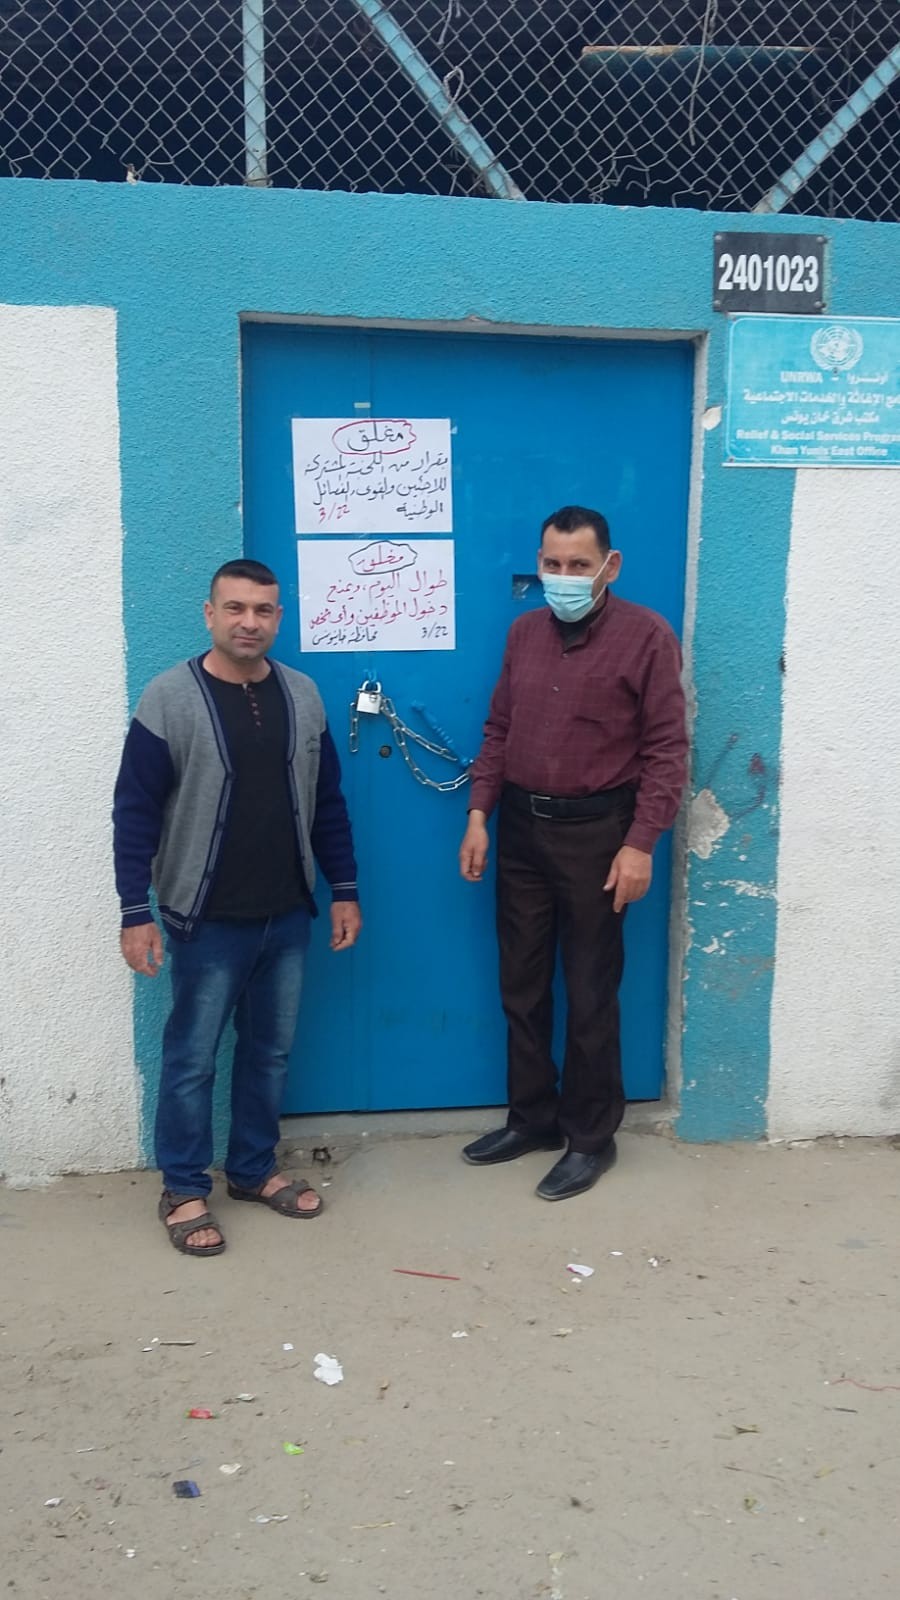 اللجنة المشتركة بغزّة تُغلق مكاتب خدمات اللاجئين رفضًا لسياسة "الأونروا"